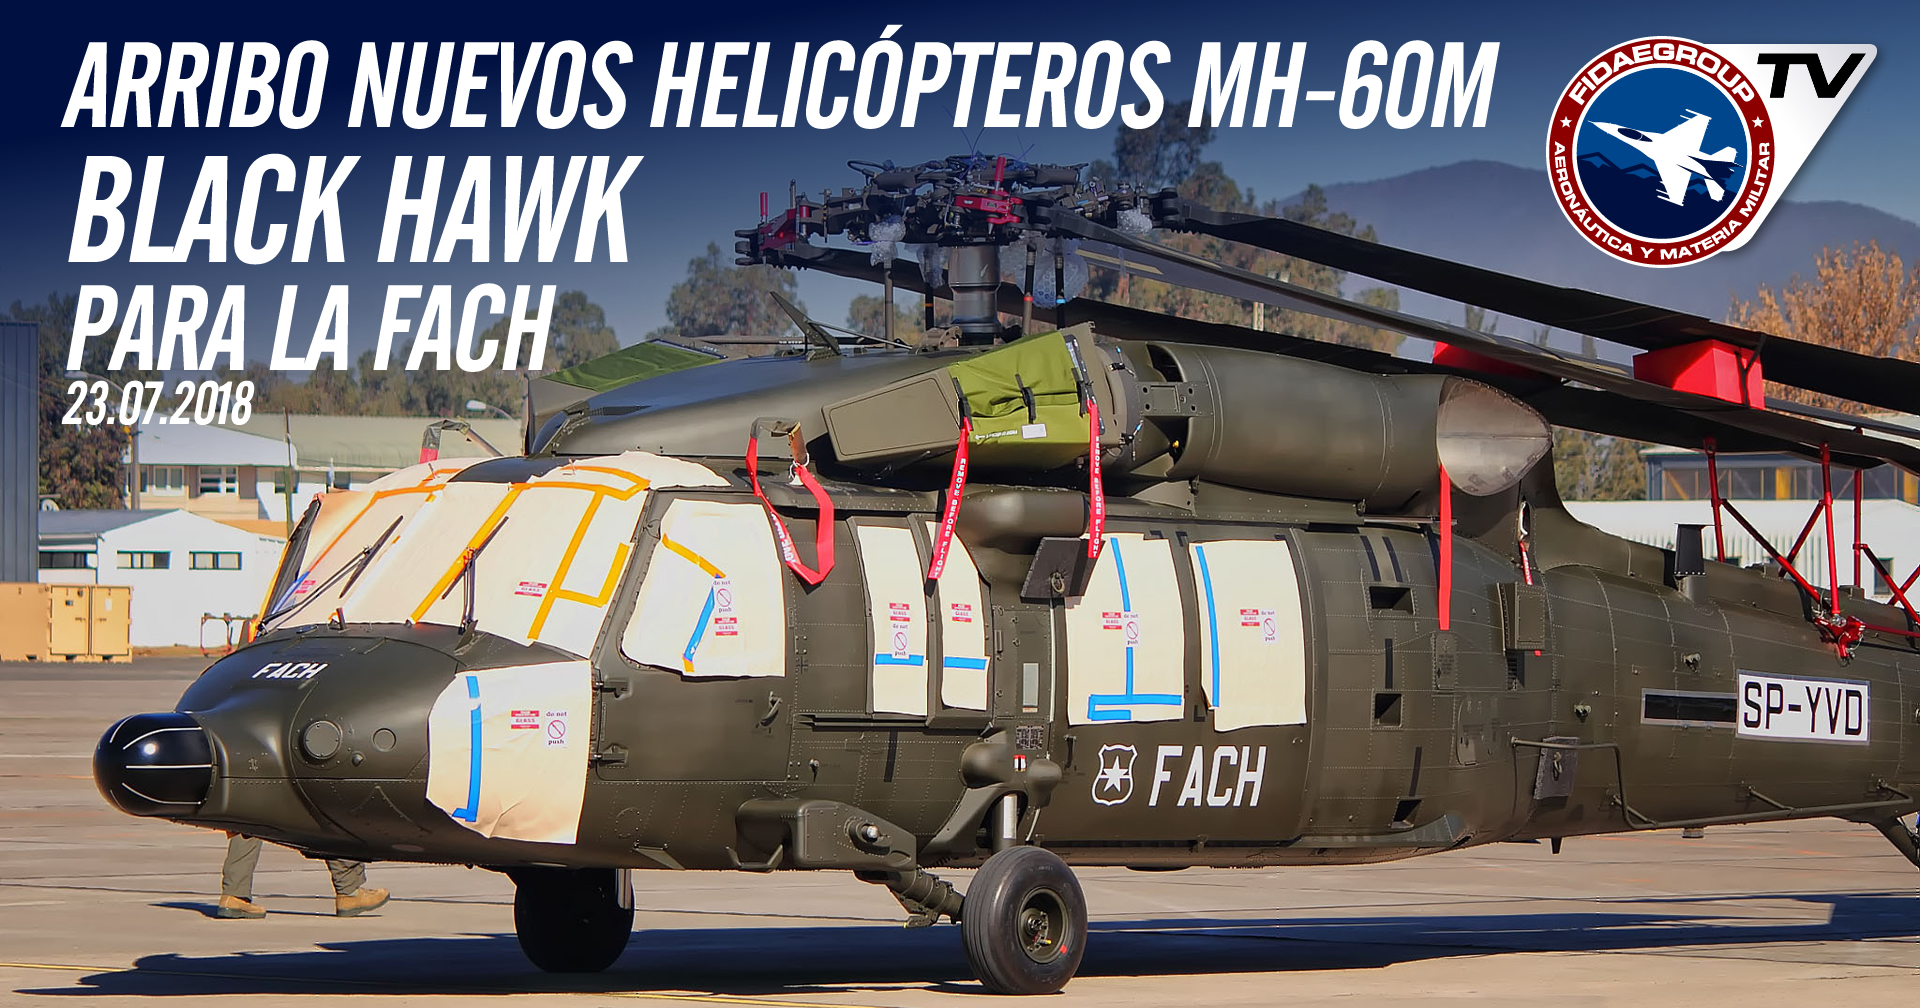 Llegada de los nuevos MH-60M Black Hawk a bordo de un Antonov 124 a la Fach